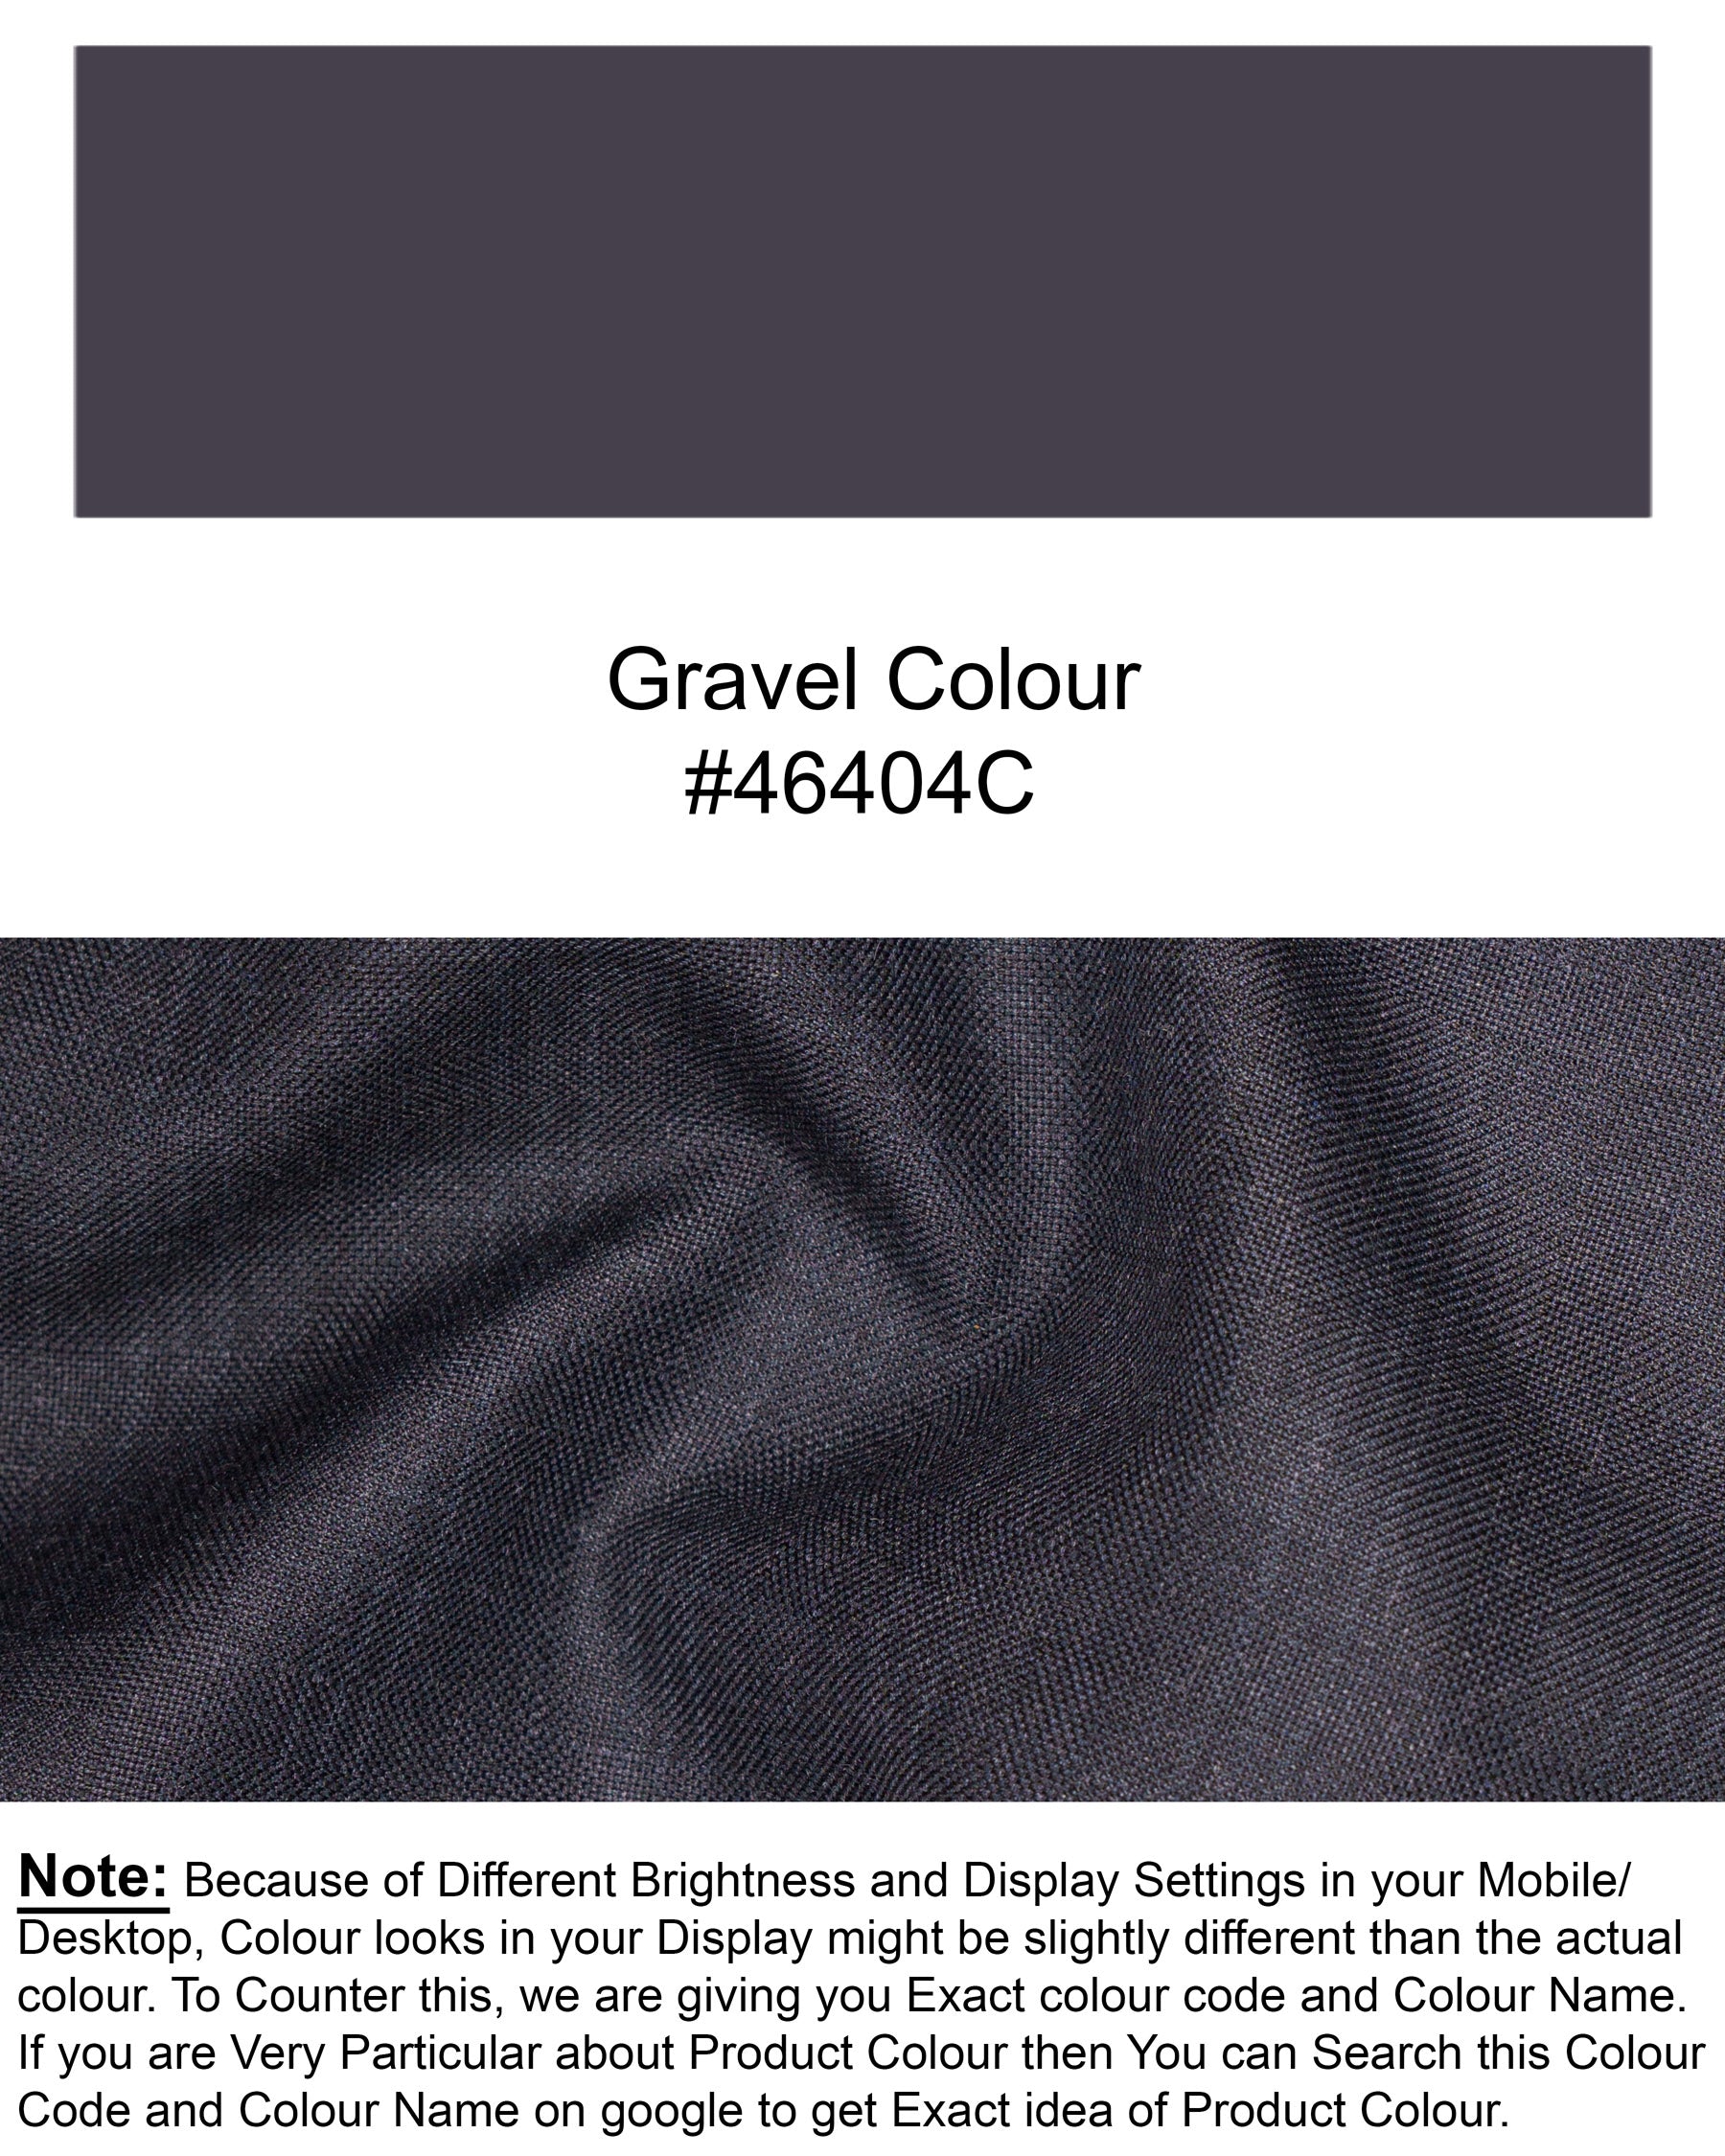 Gravel Grey Subtle Plaid Wool Rich Waistcoat V1567-36, V1567-38, V1567-40, V1567-42, V1567-44, V1567-46, V1567-48, V1567-50, V1567-52, V1567-54, V1567-56, V1567-58, V1567-60